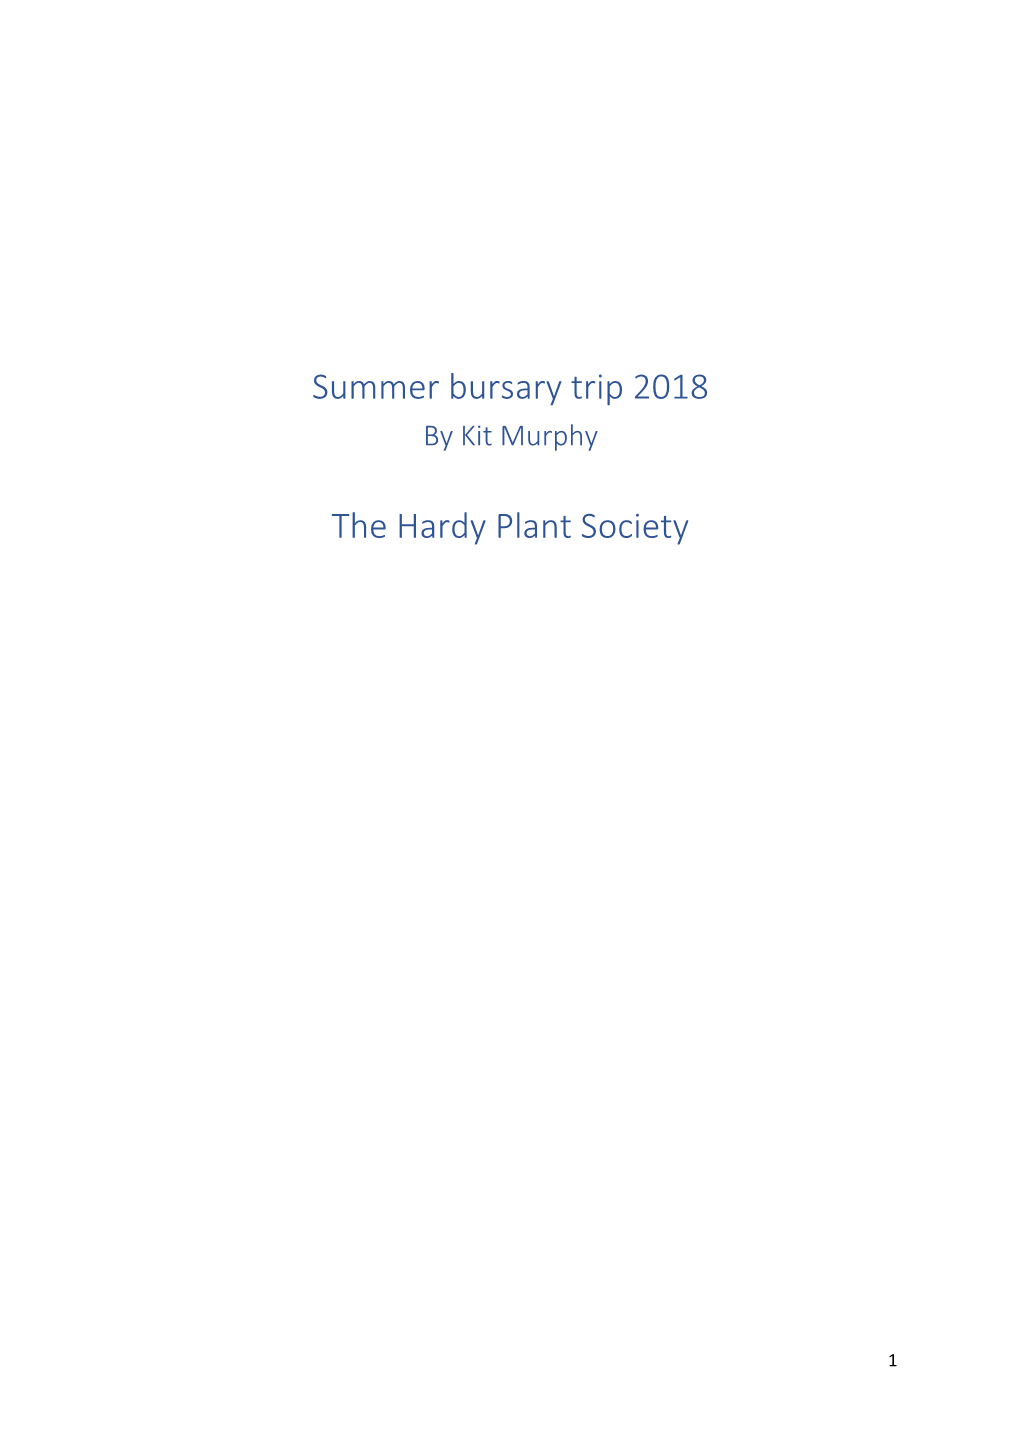 Summer Bursary Trip 2018 the Hardy Plant Society